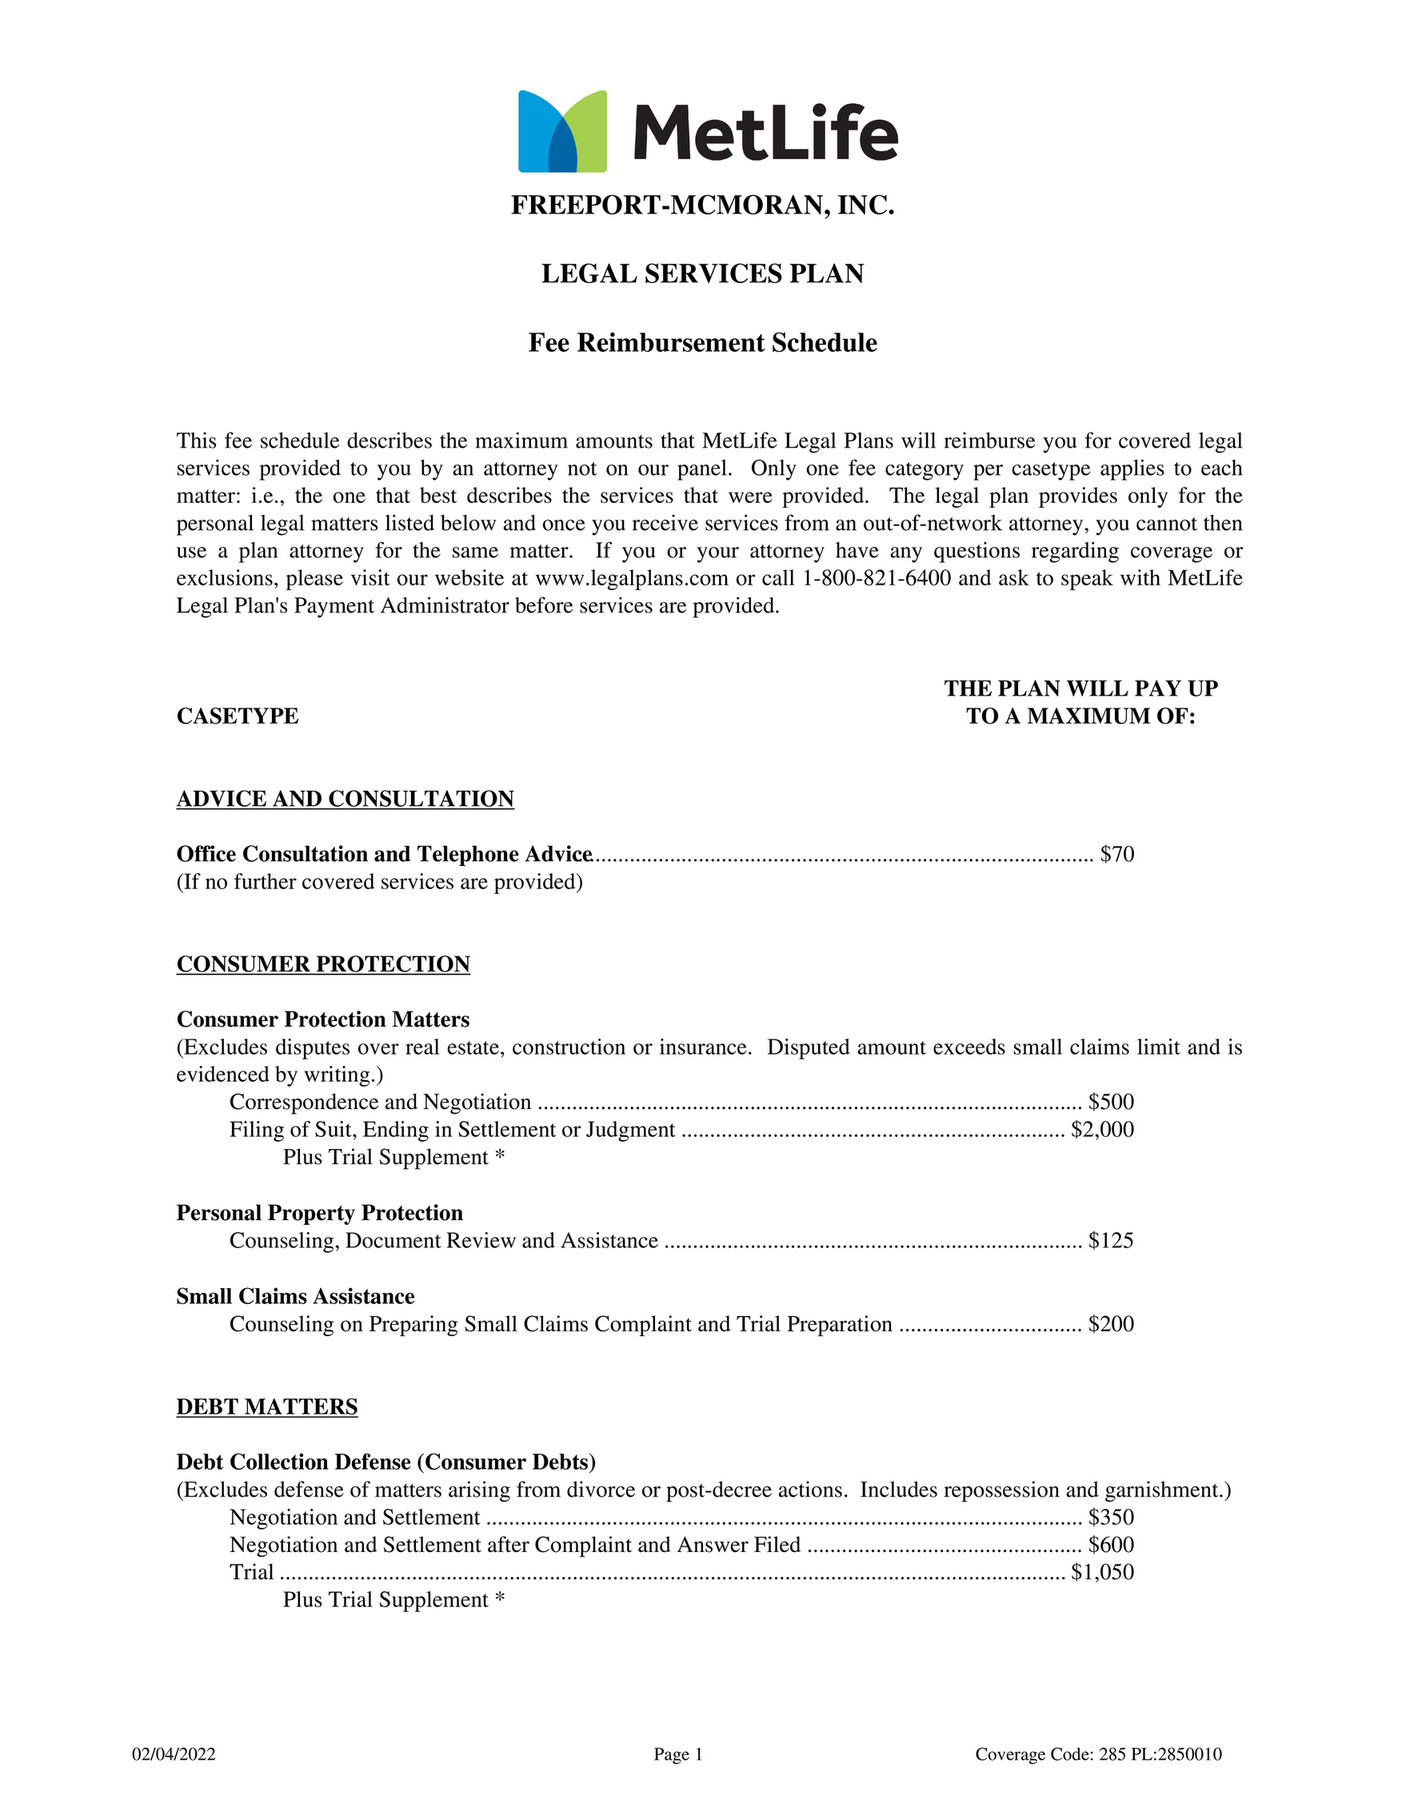 FreeportMcMoRan MetLife Group Legal Fee Schedule Page 1